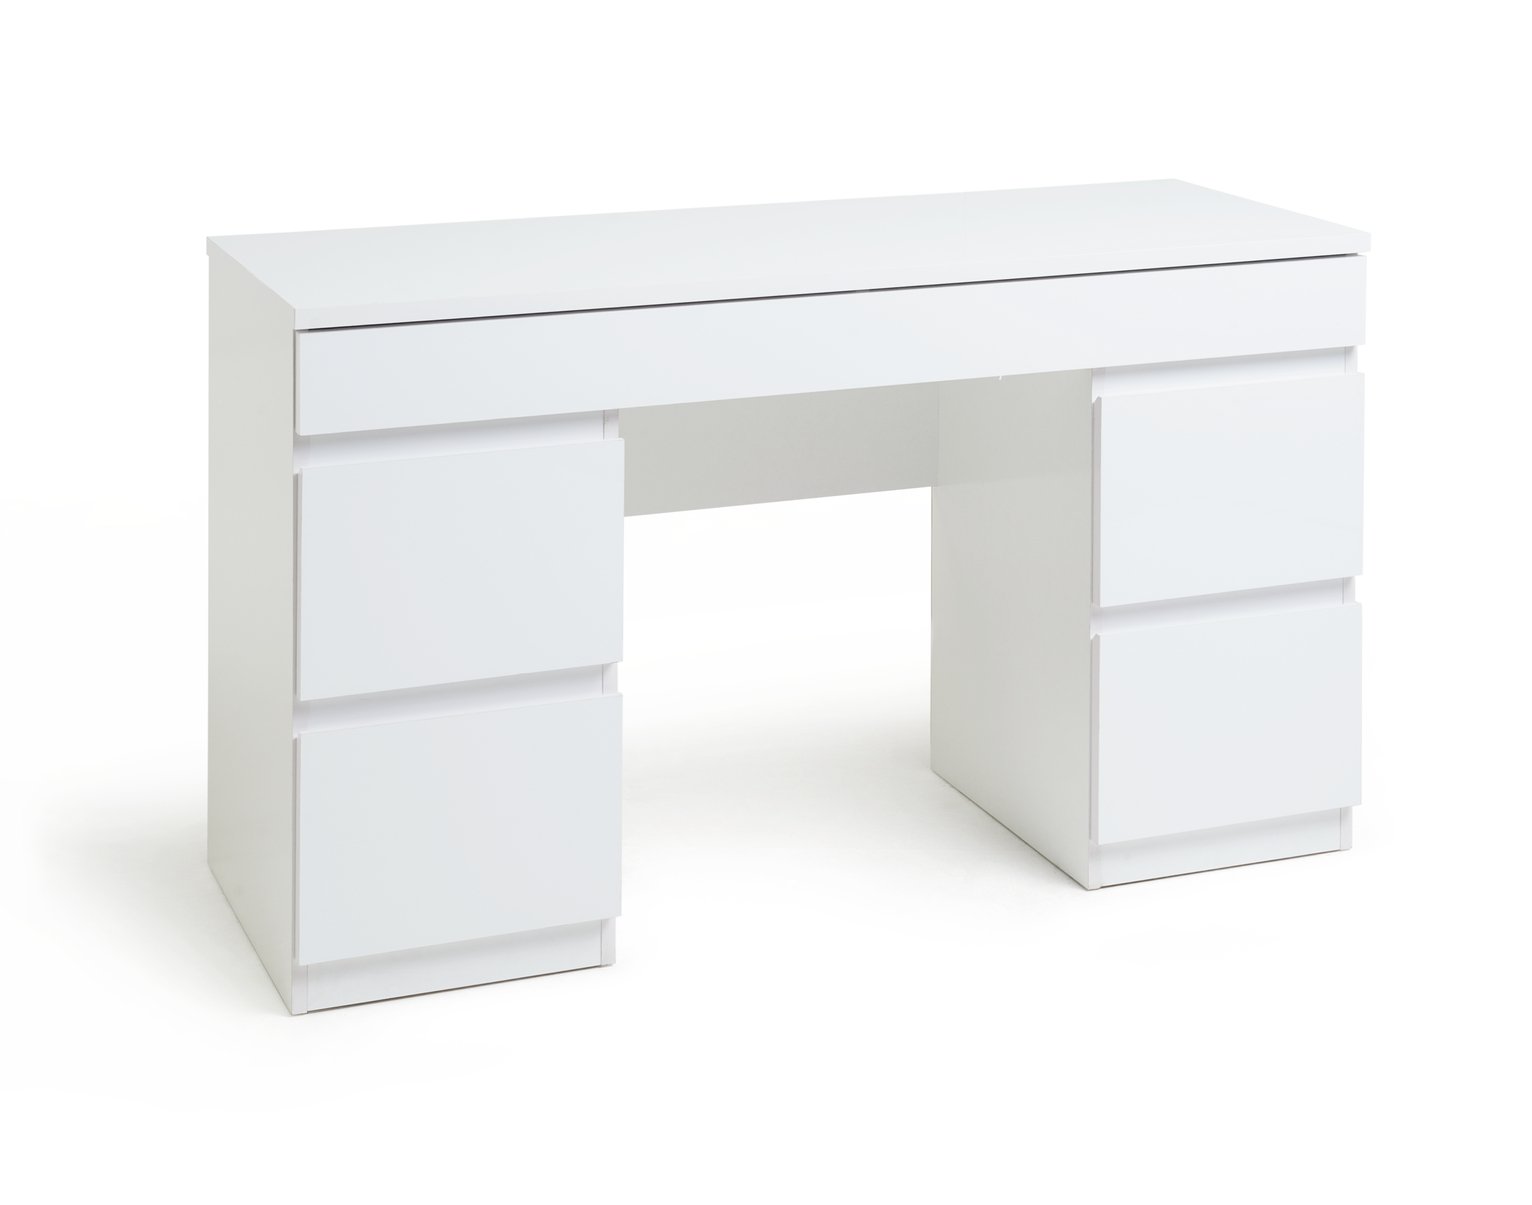 Habitat Jenson 6 Drawer Dressing Table Desk - White Gloss